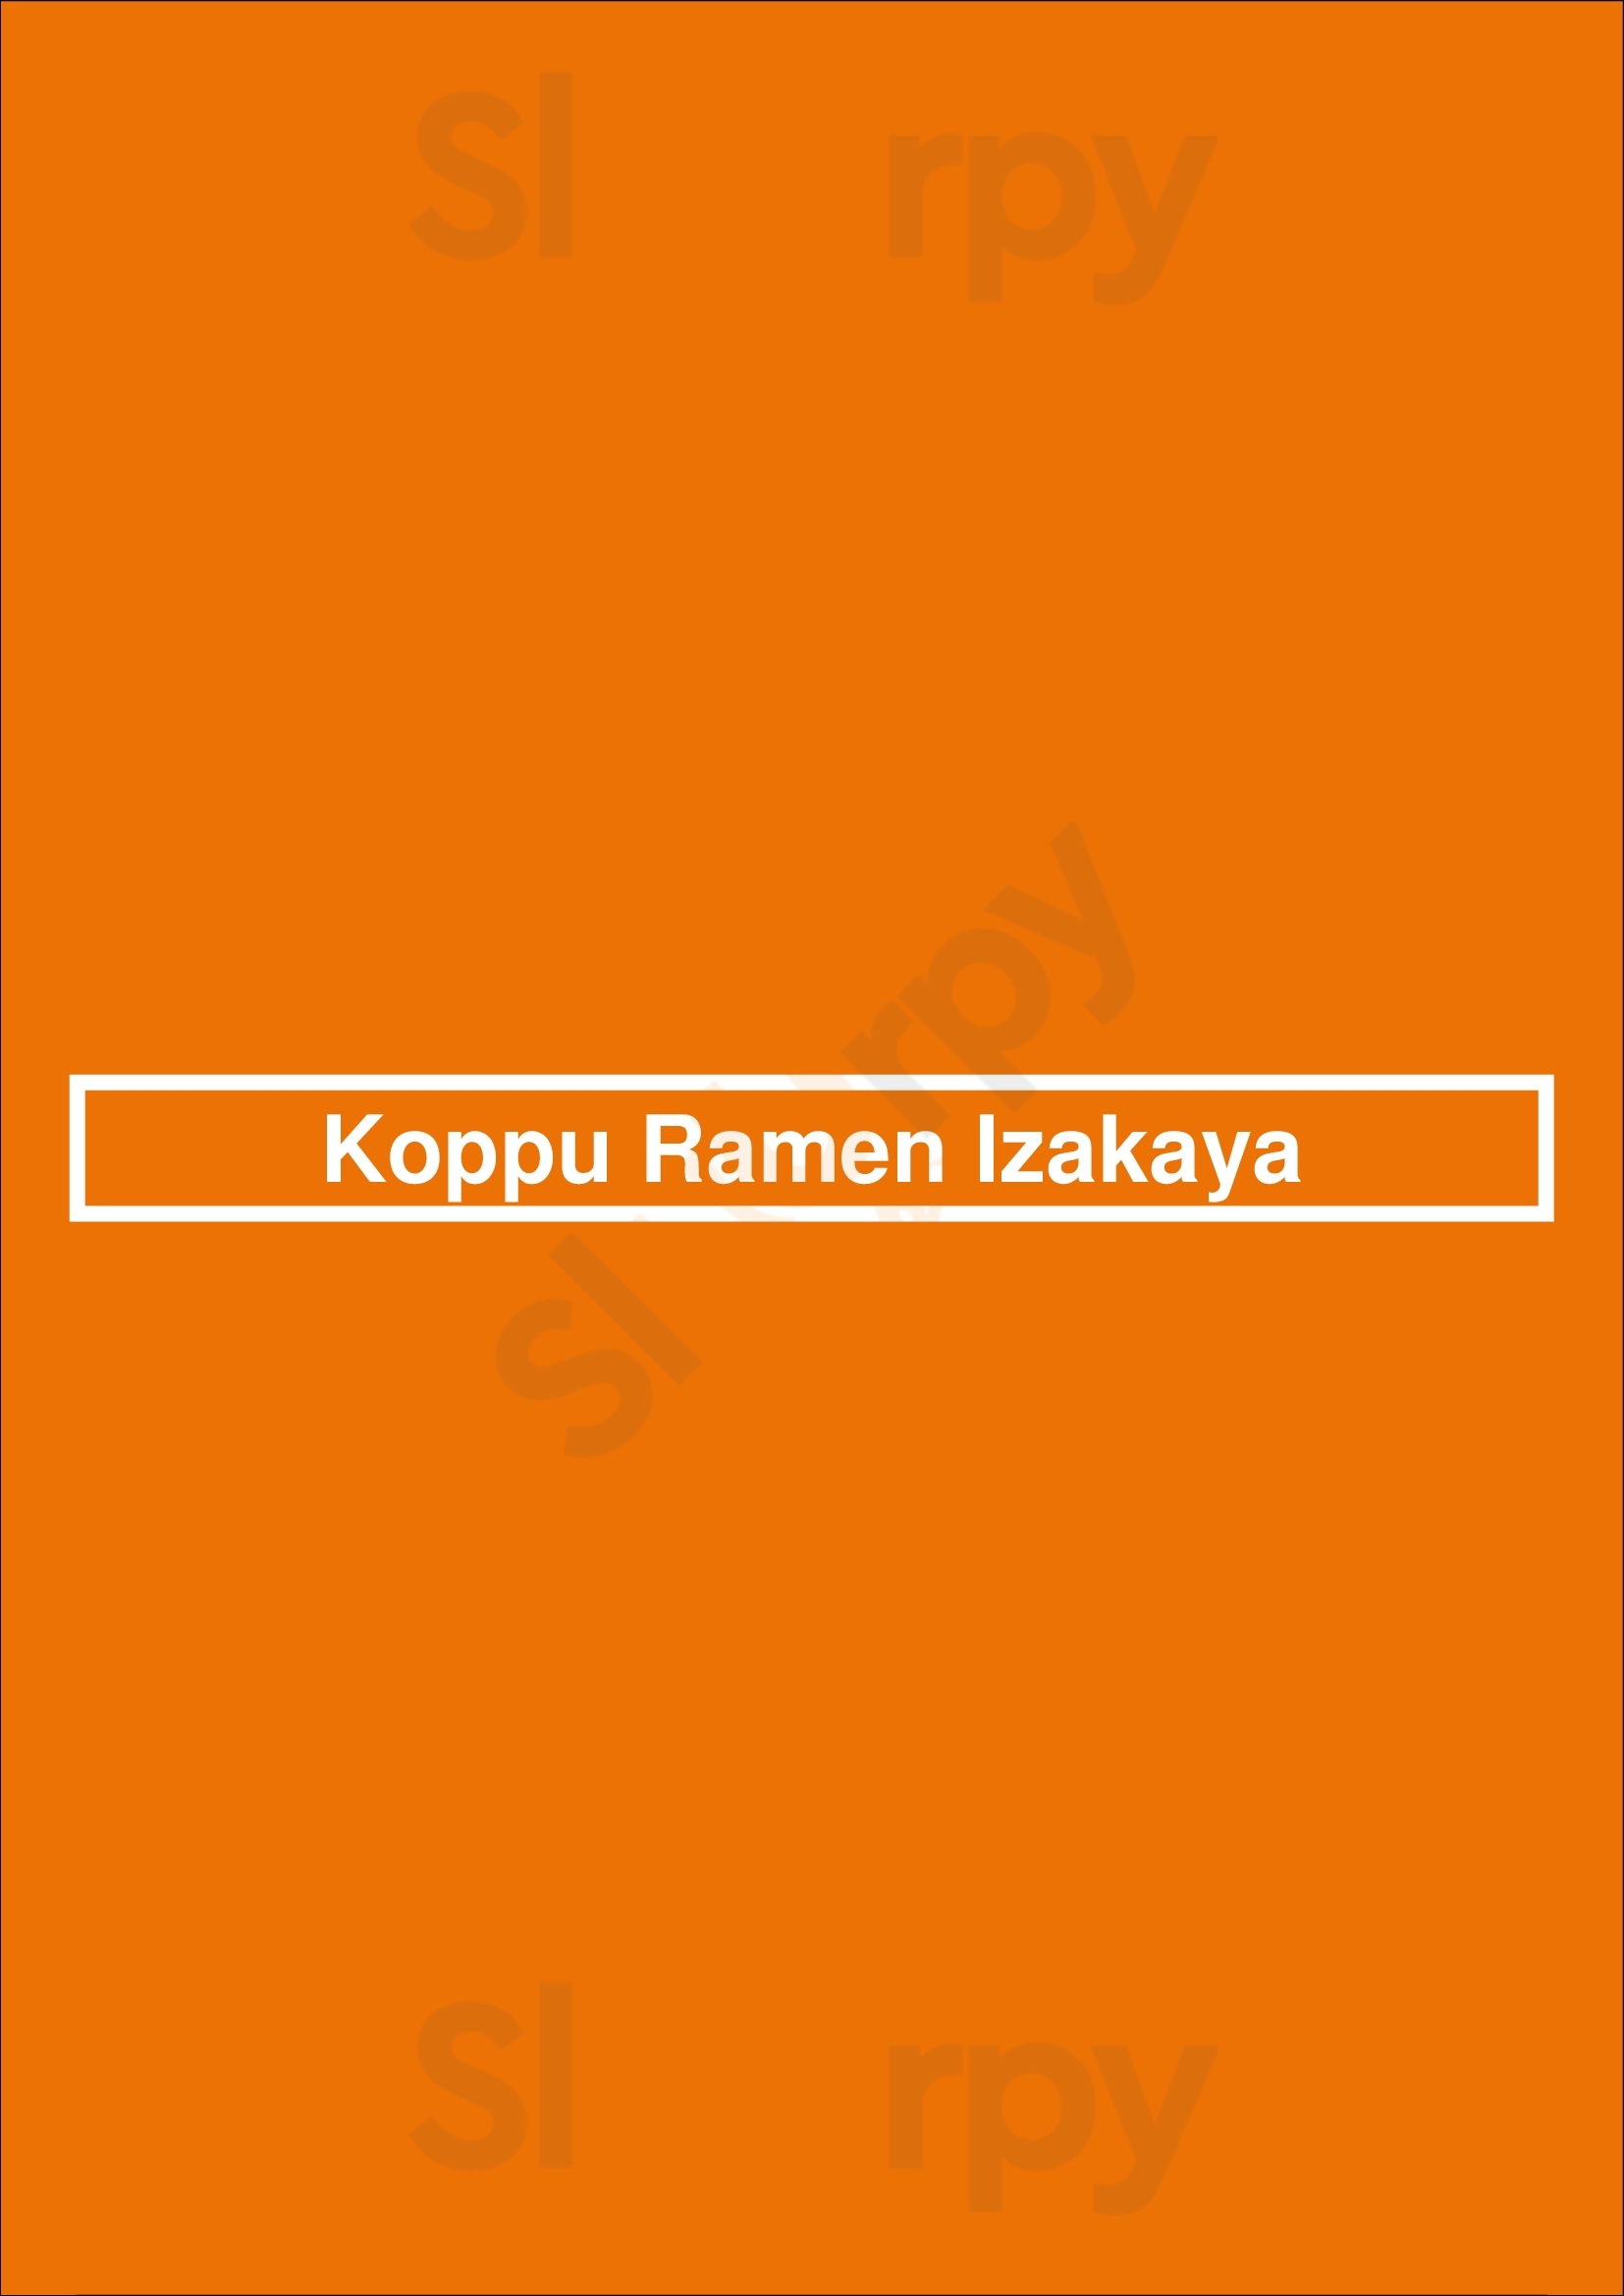 Koppu Ramen Izakaya - Avenida Lisboa Menu - 1